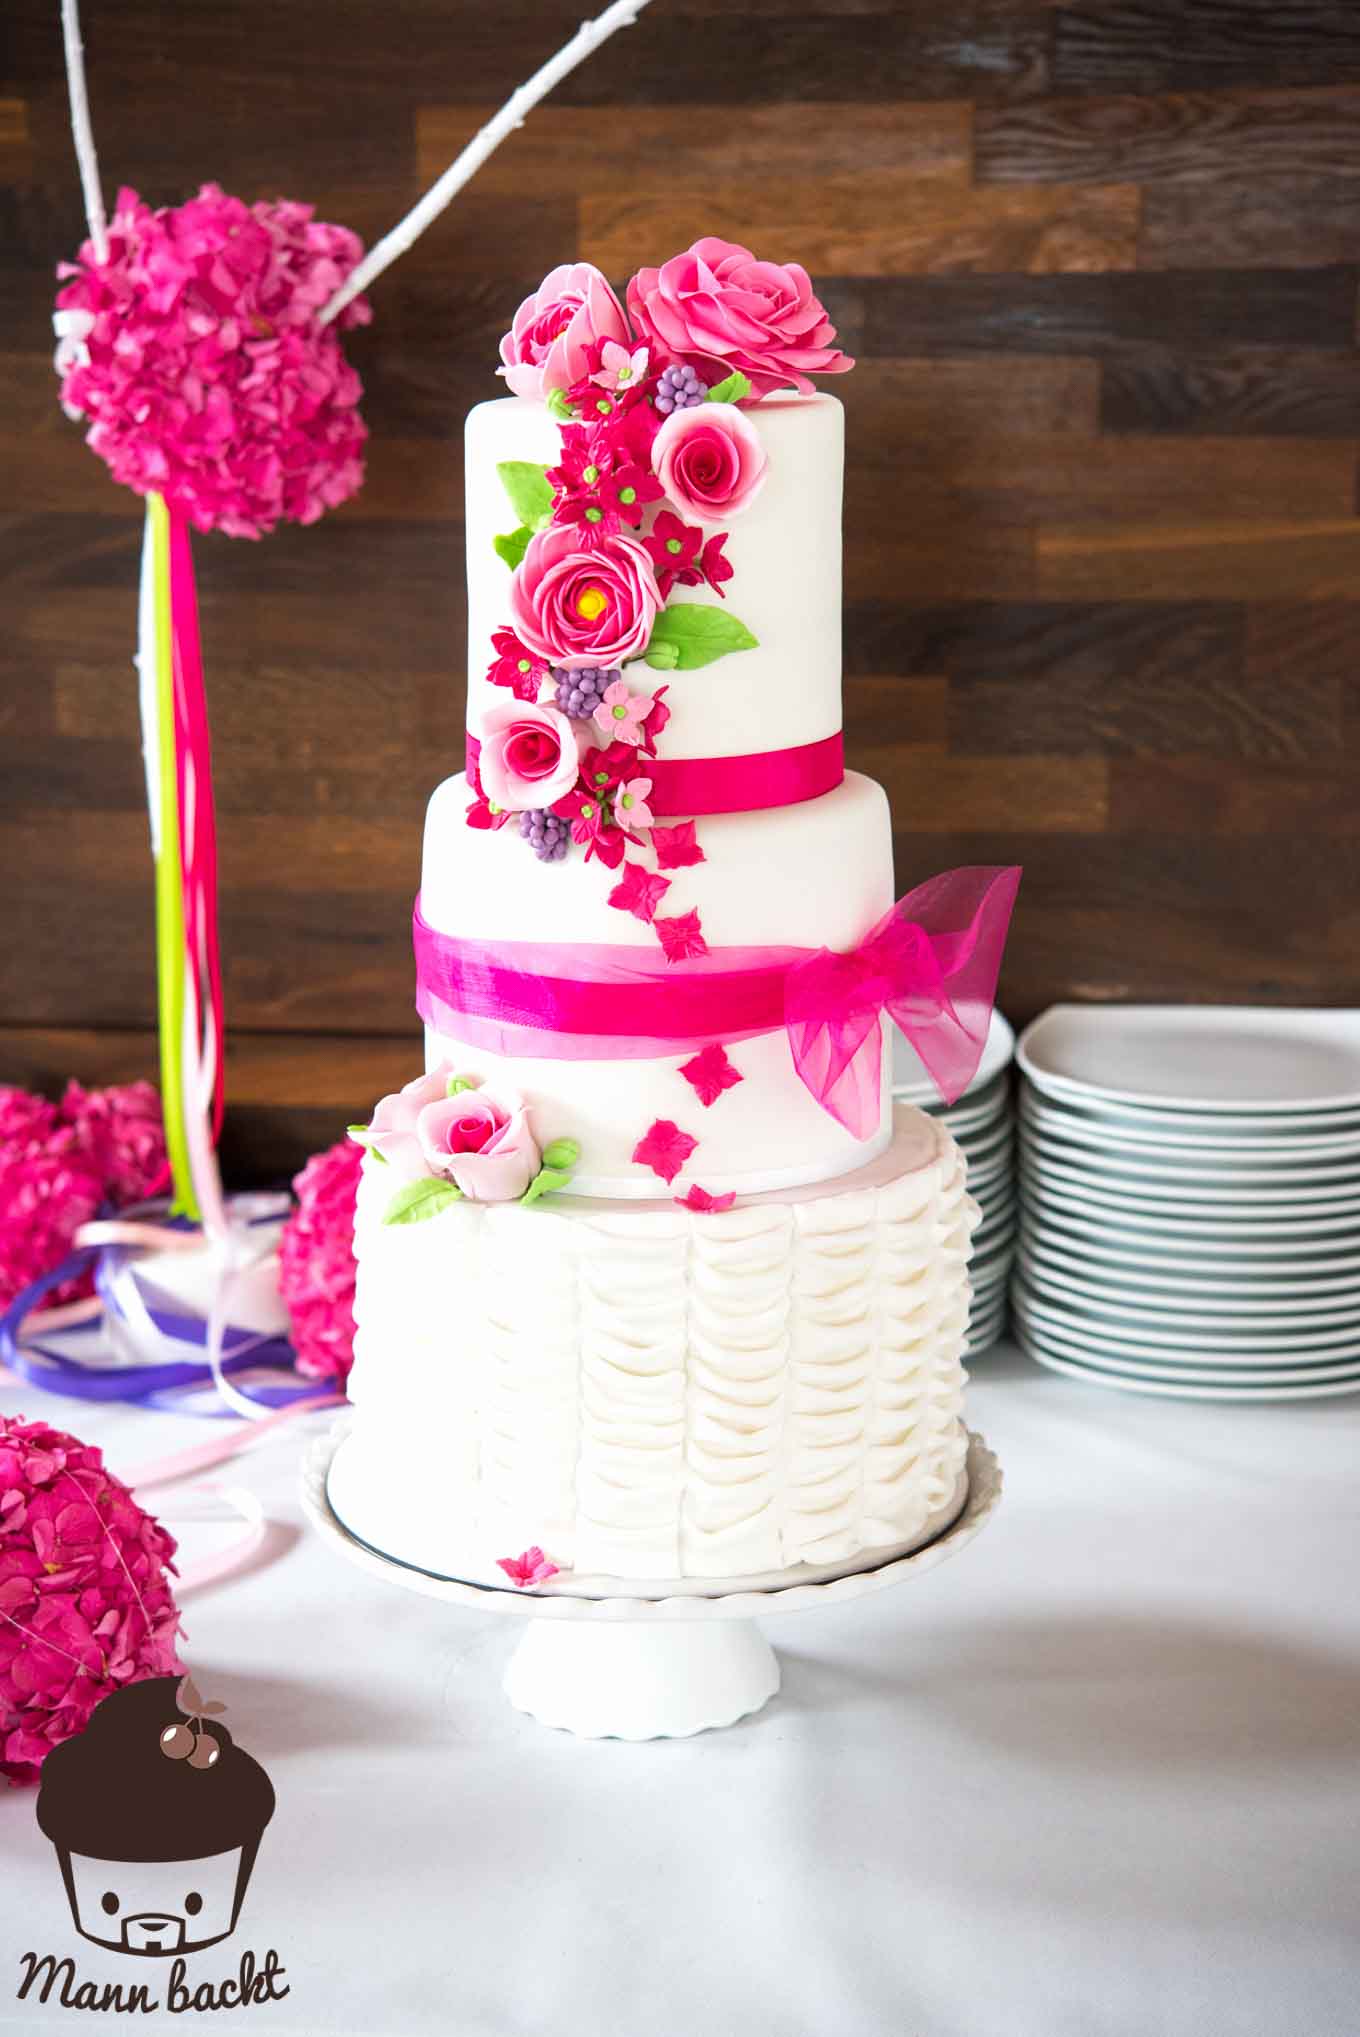 Hochzeitstorte Mann backt Tortendesign pink Wedding Cake Moschen (9 von 9)